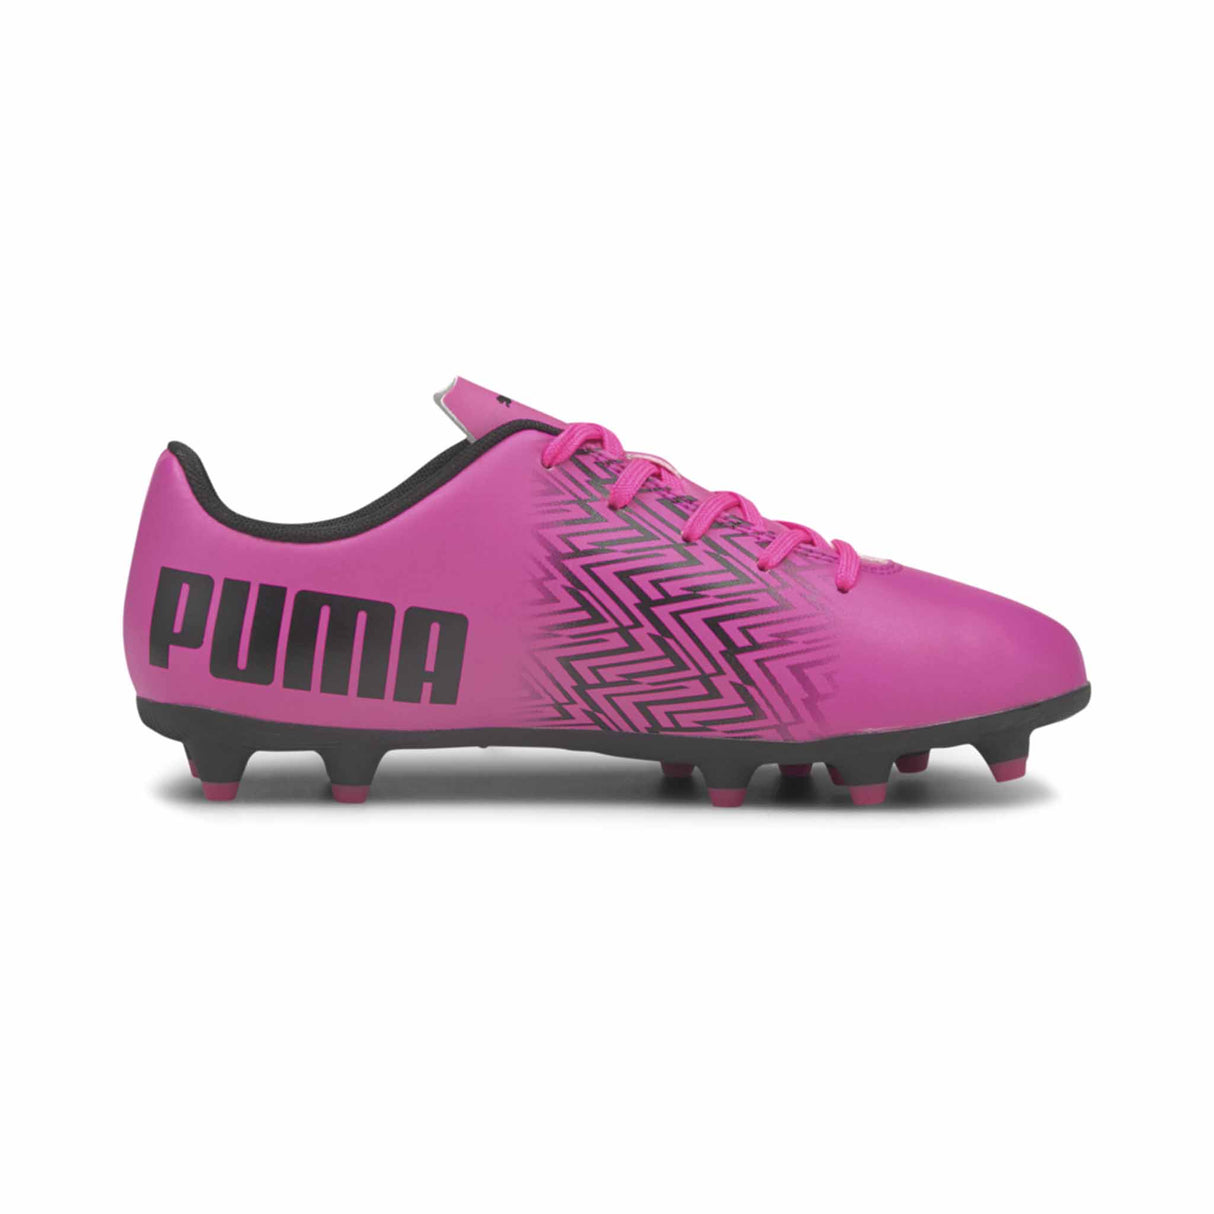 Puma Tacto FG/AG Junior chaussures de soccer enfant Rose / Noir côté intérieur